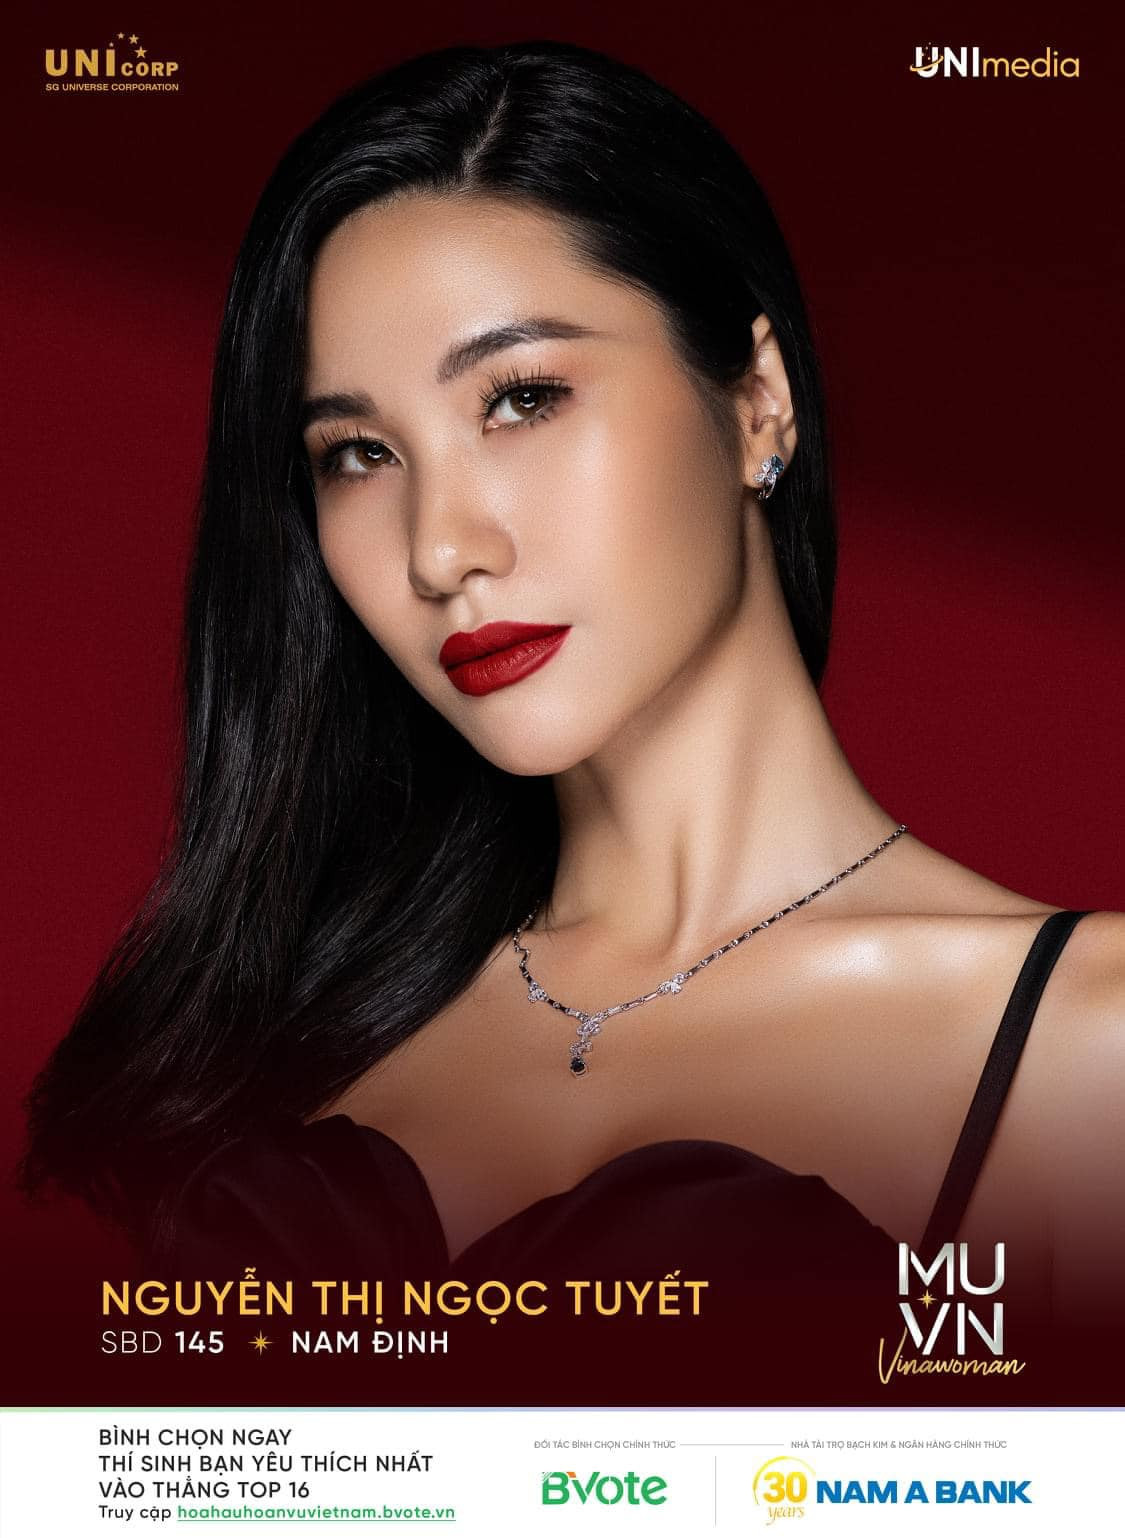 Nguyễn Thị Ngọc Châu - SBD 314 vence miss universe vietnam 2022. - Página 3 VWd92t